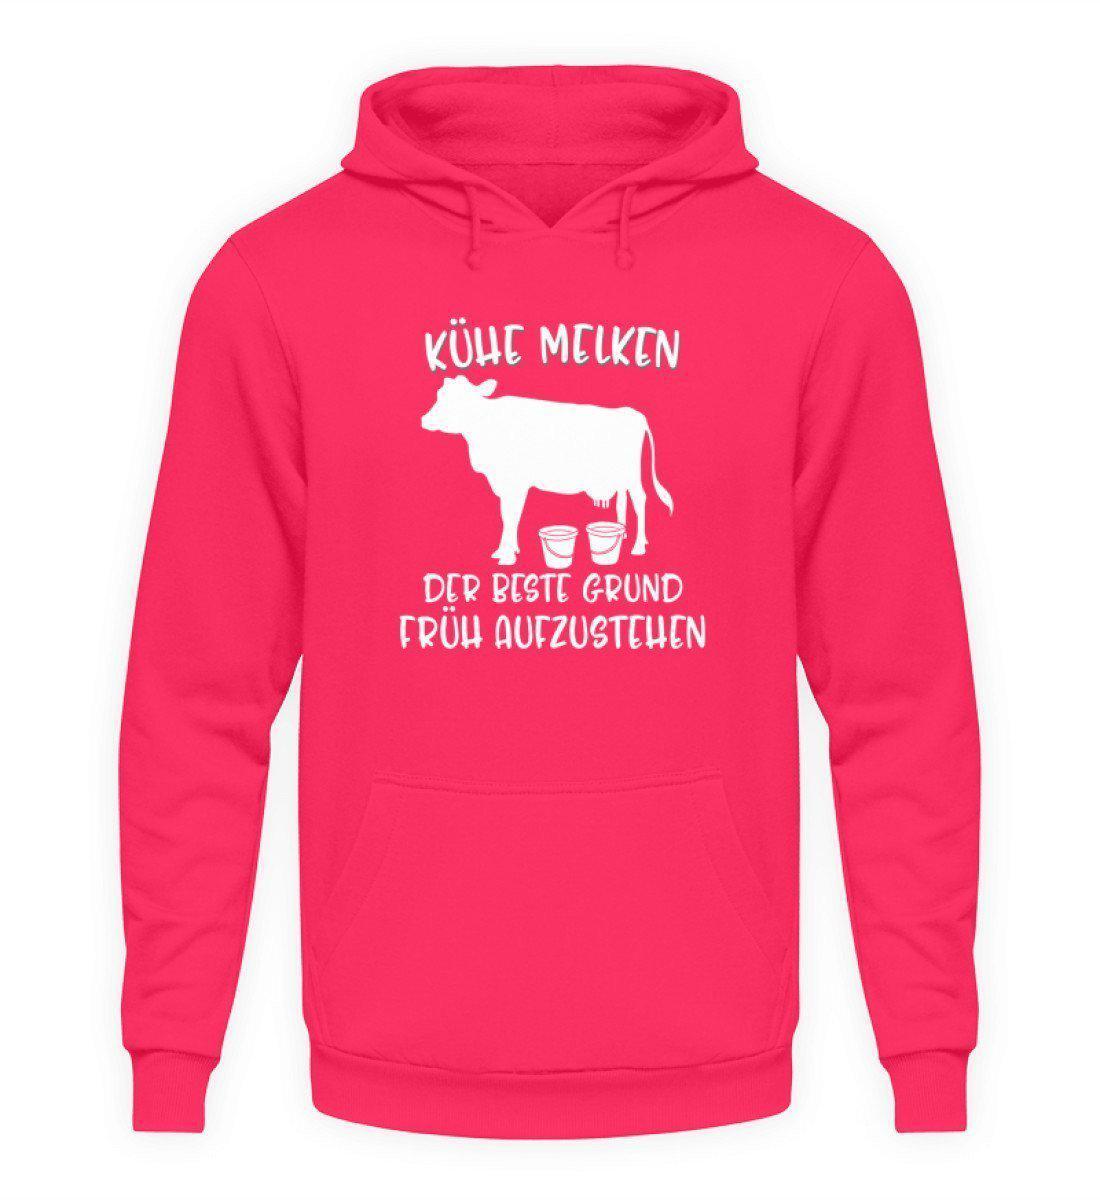 Kühe melken früh aufstehen · Unisex Kapuzenpullover Hoodie-Unisex Hoodie-Hot Pink-L-Agrarstarz